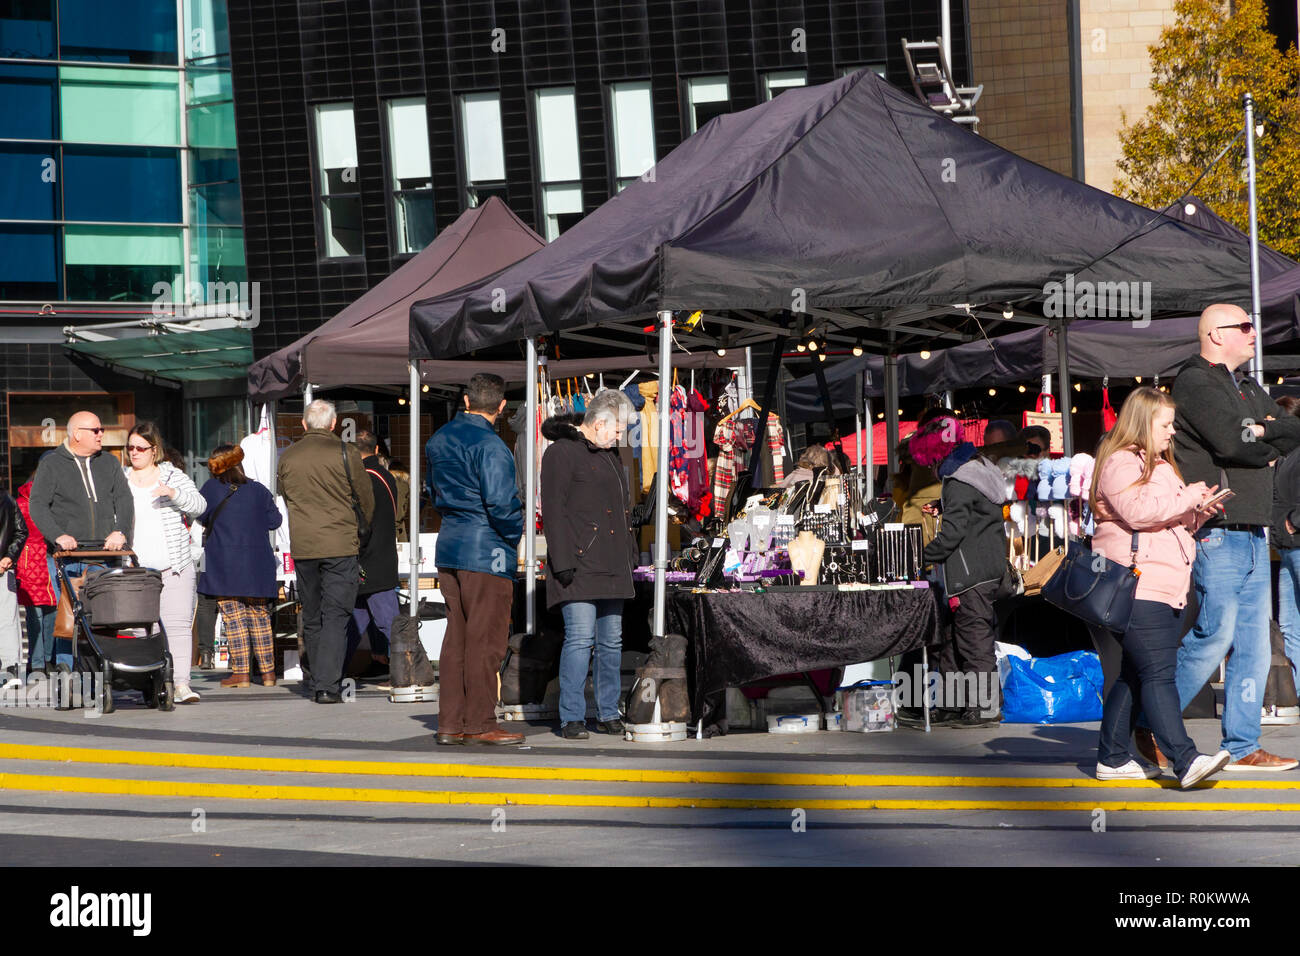 Die Macher Markt-, Handwerks- und Lebensmittelmarkt im Lowry Outlet Shopping Center, Mediacityuk, Salford Quays Stockfoto